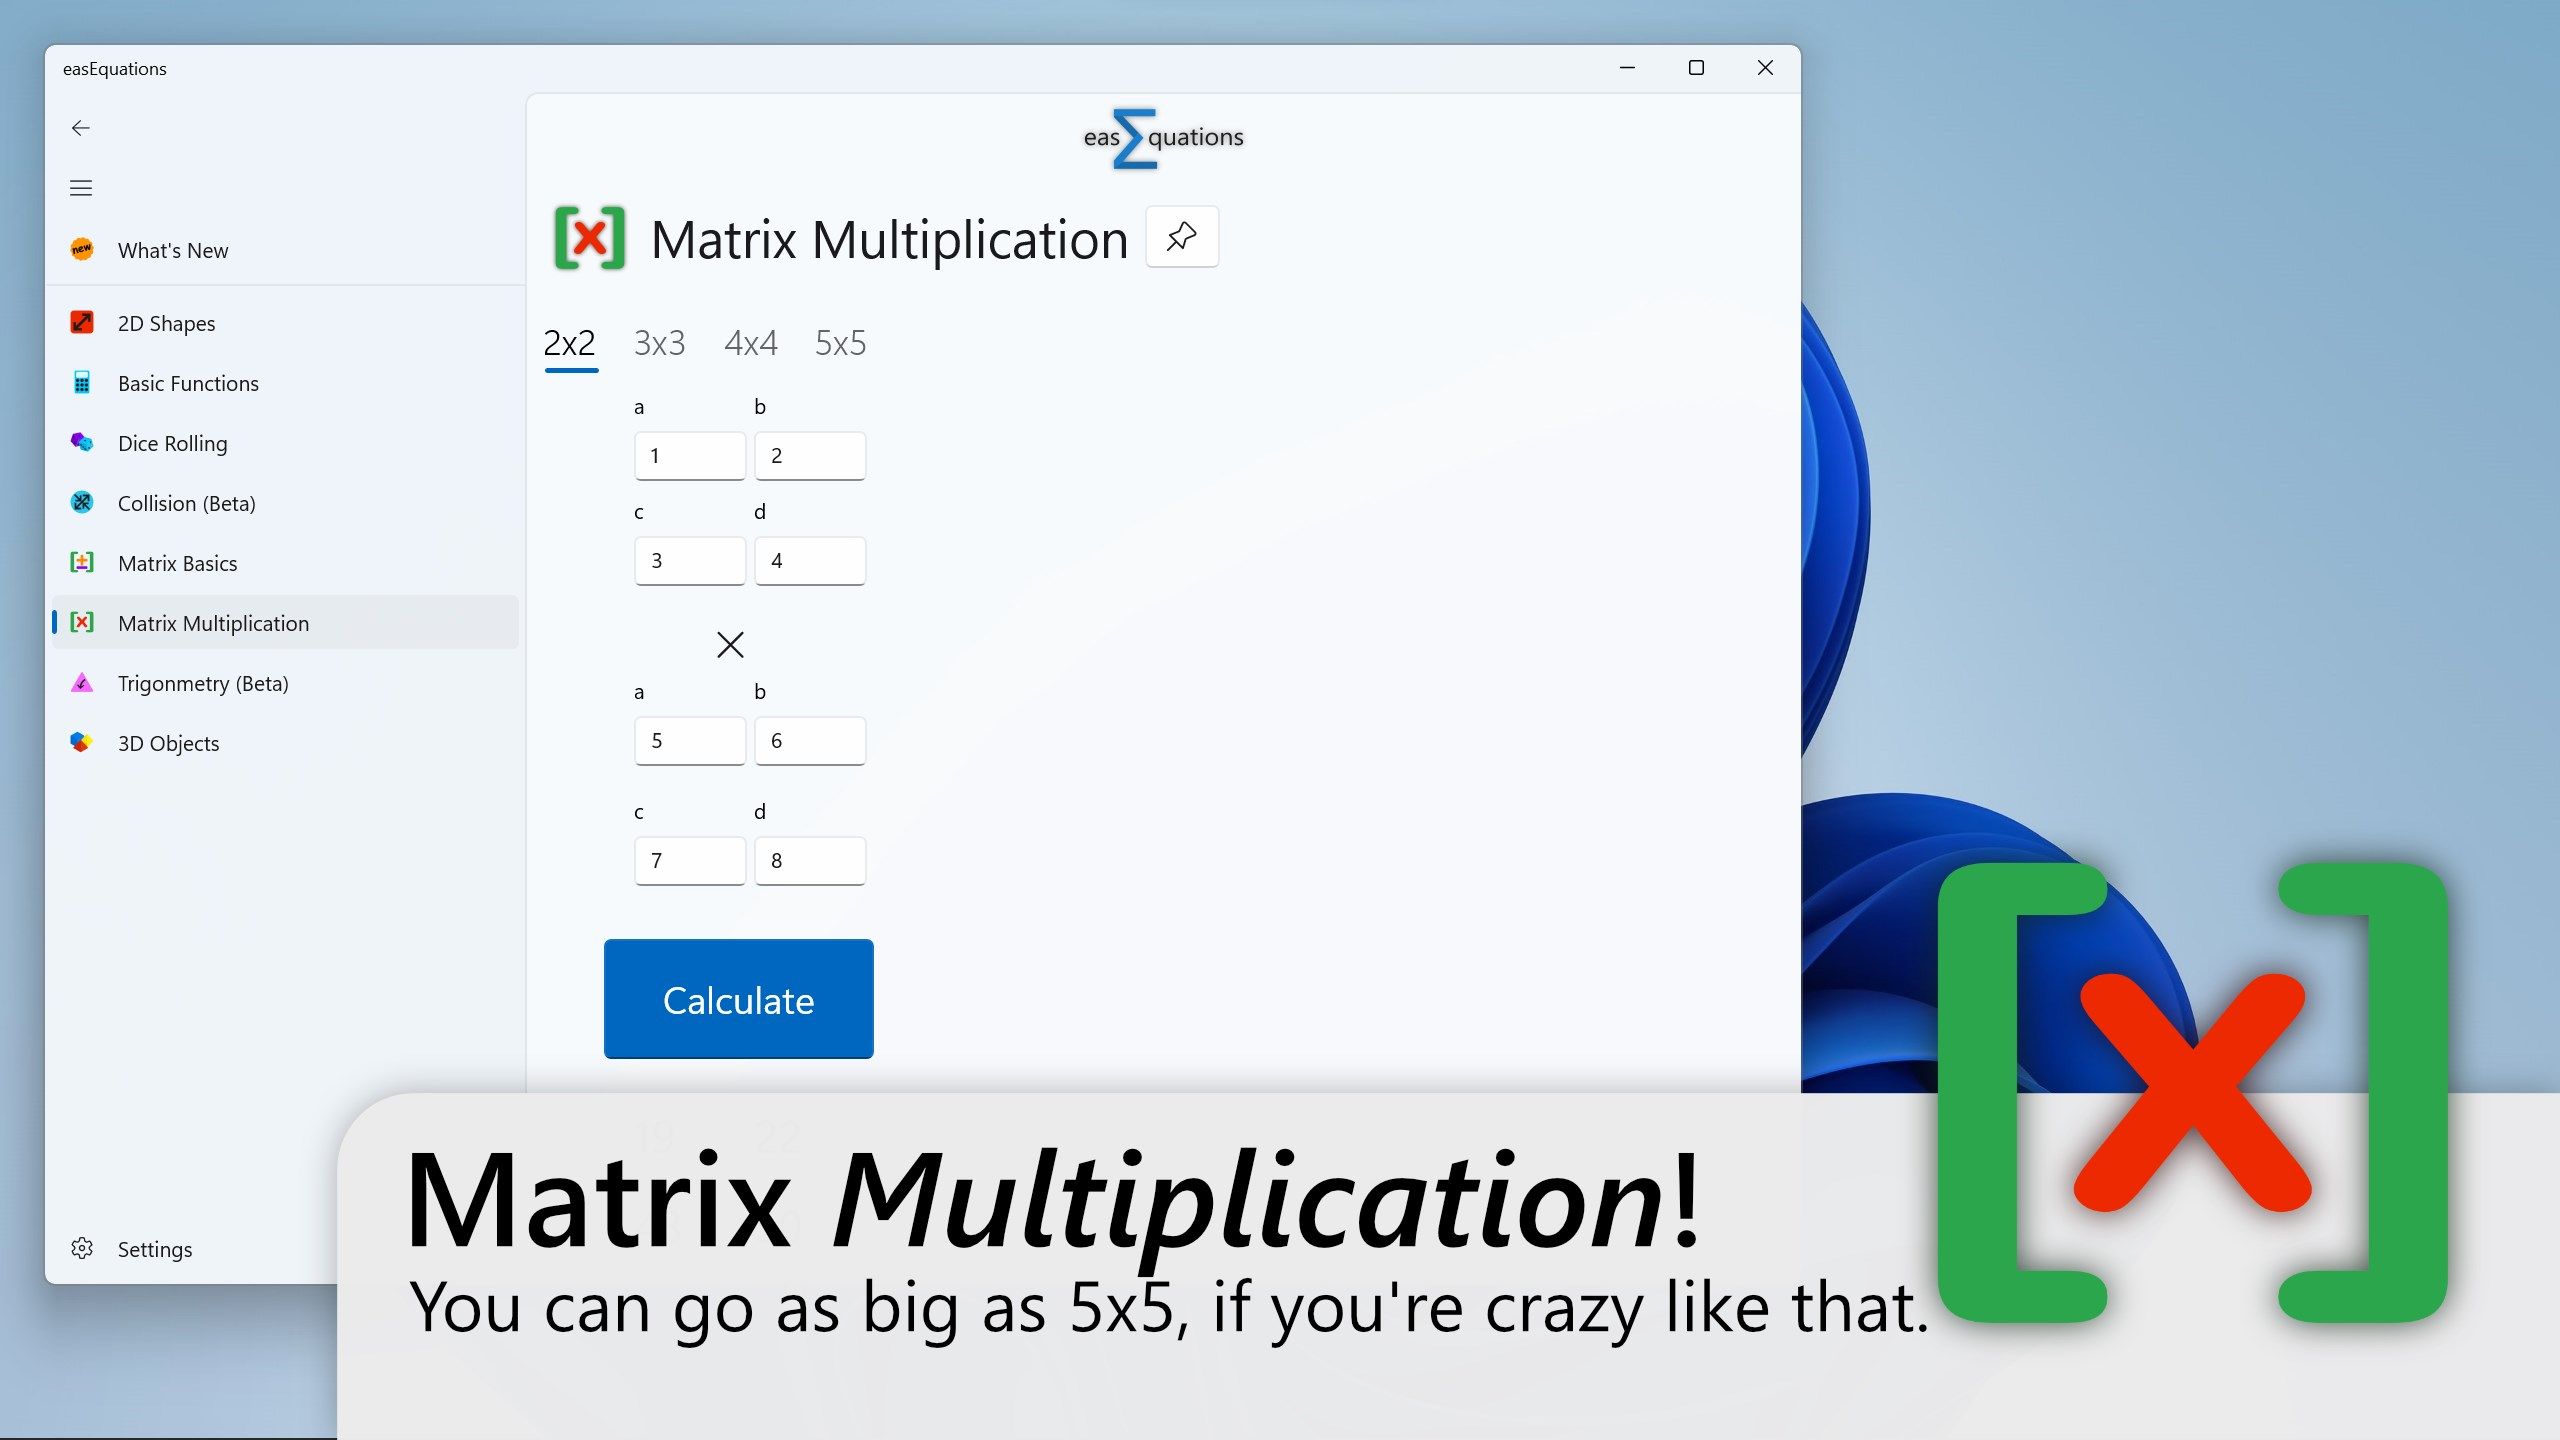 Matrix Multiplication!